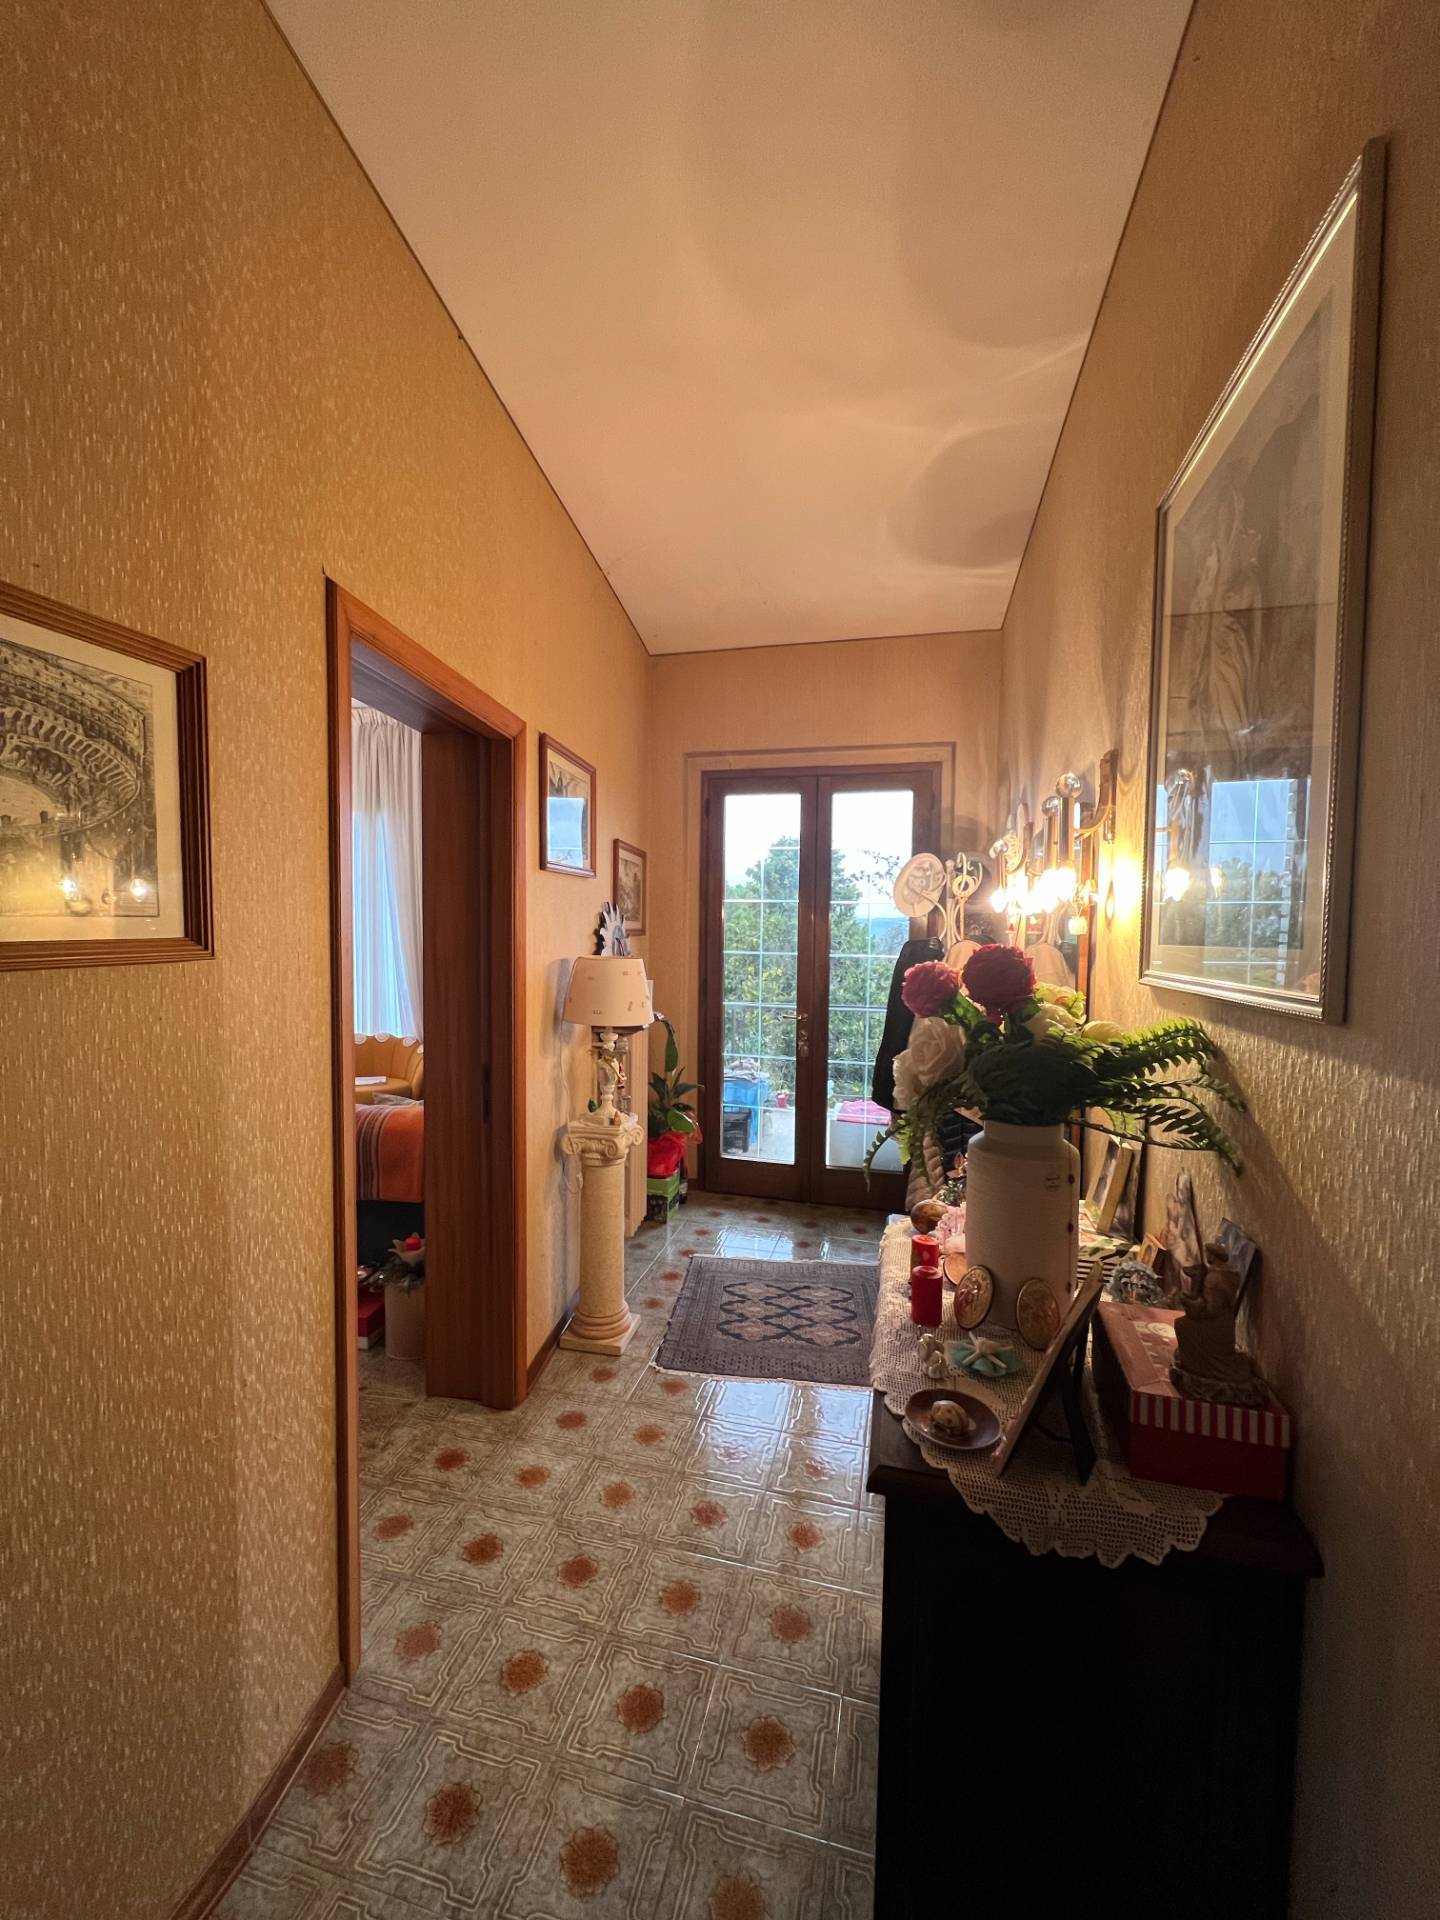 Foto - Appartamento In Vendita Montegiorgio (fm)